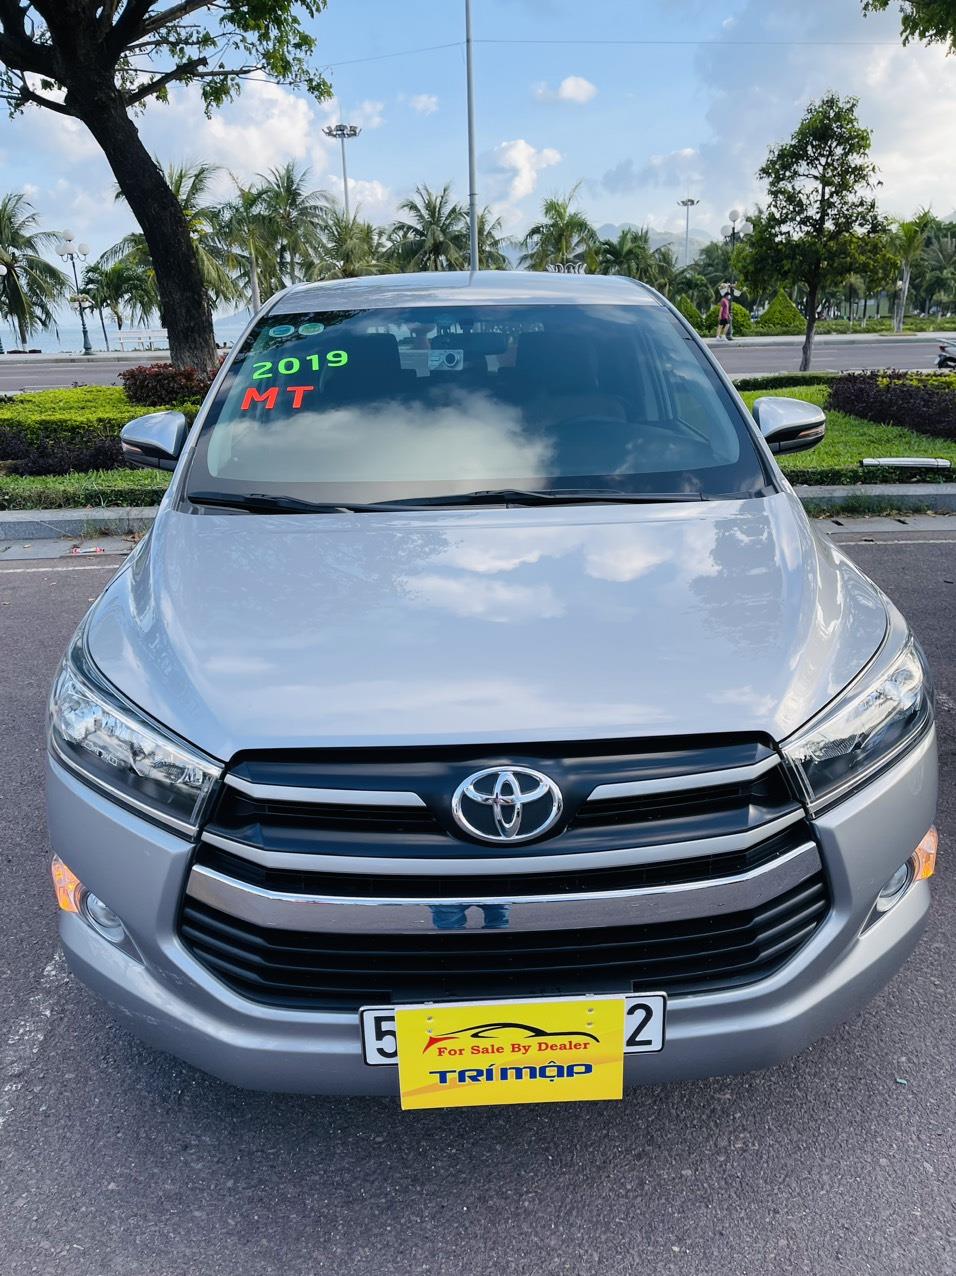 UUsed Car Dealer Trimap đang bán; Toyota Innova E 2.0 sx 2019, đăng ký 2020 một chủ mua mới đầu. 407720